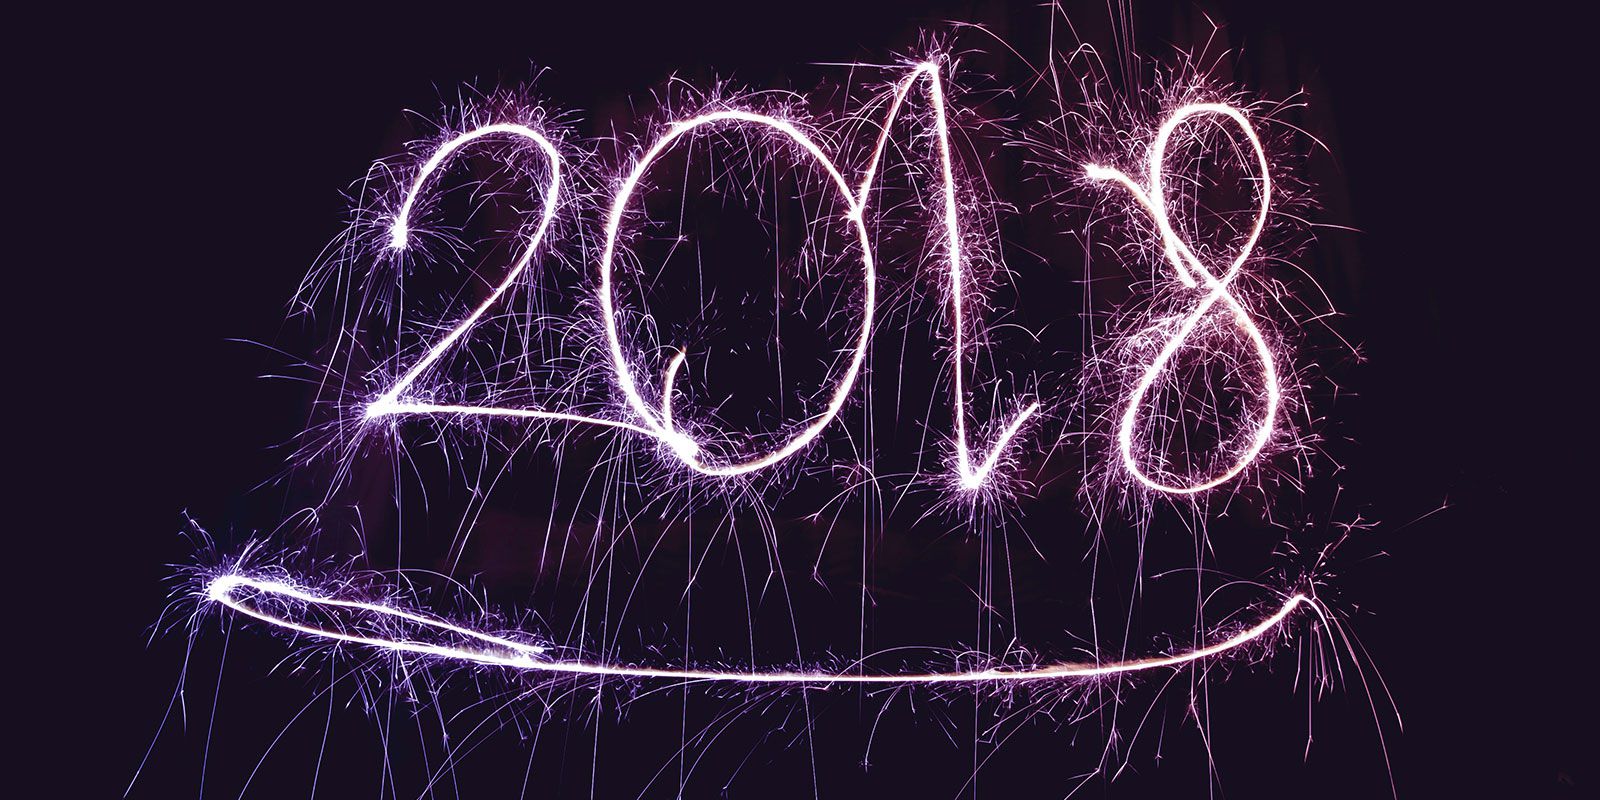 Les bonnes résolutions à prendre et à tenir en 2018